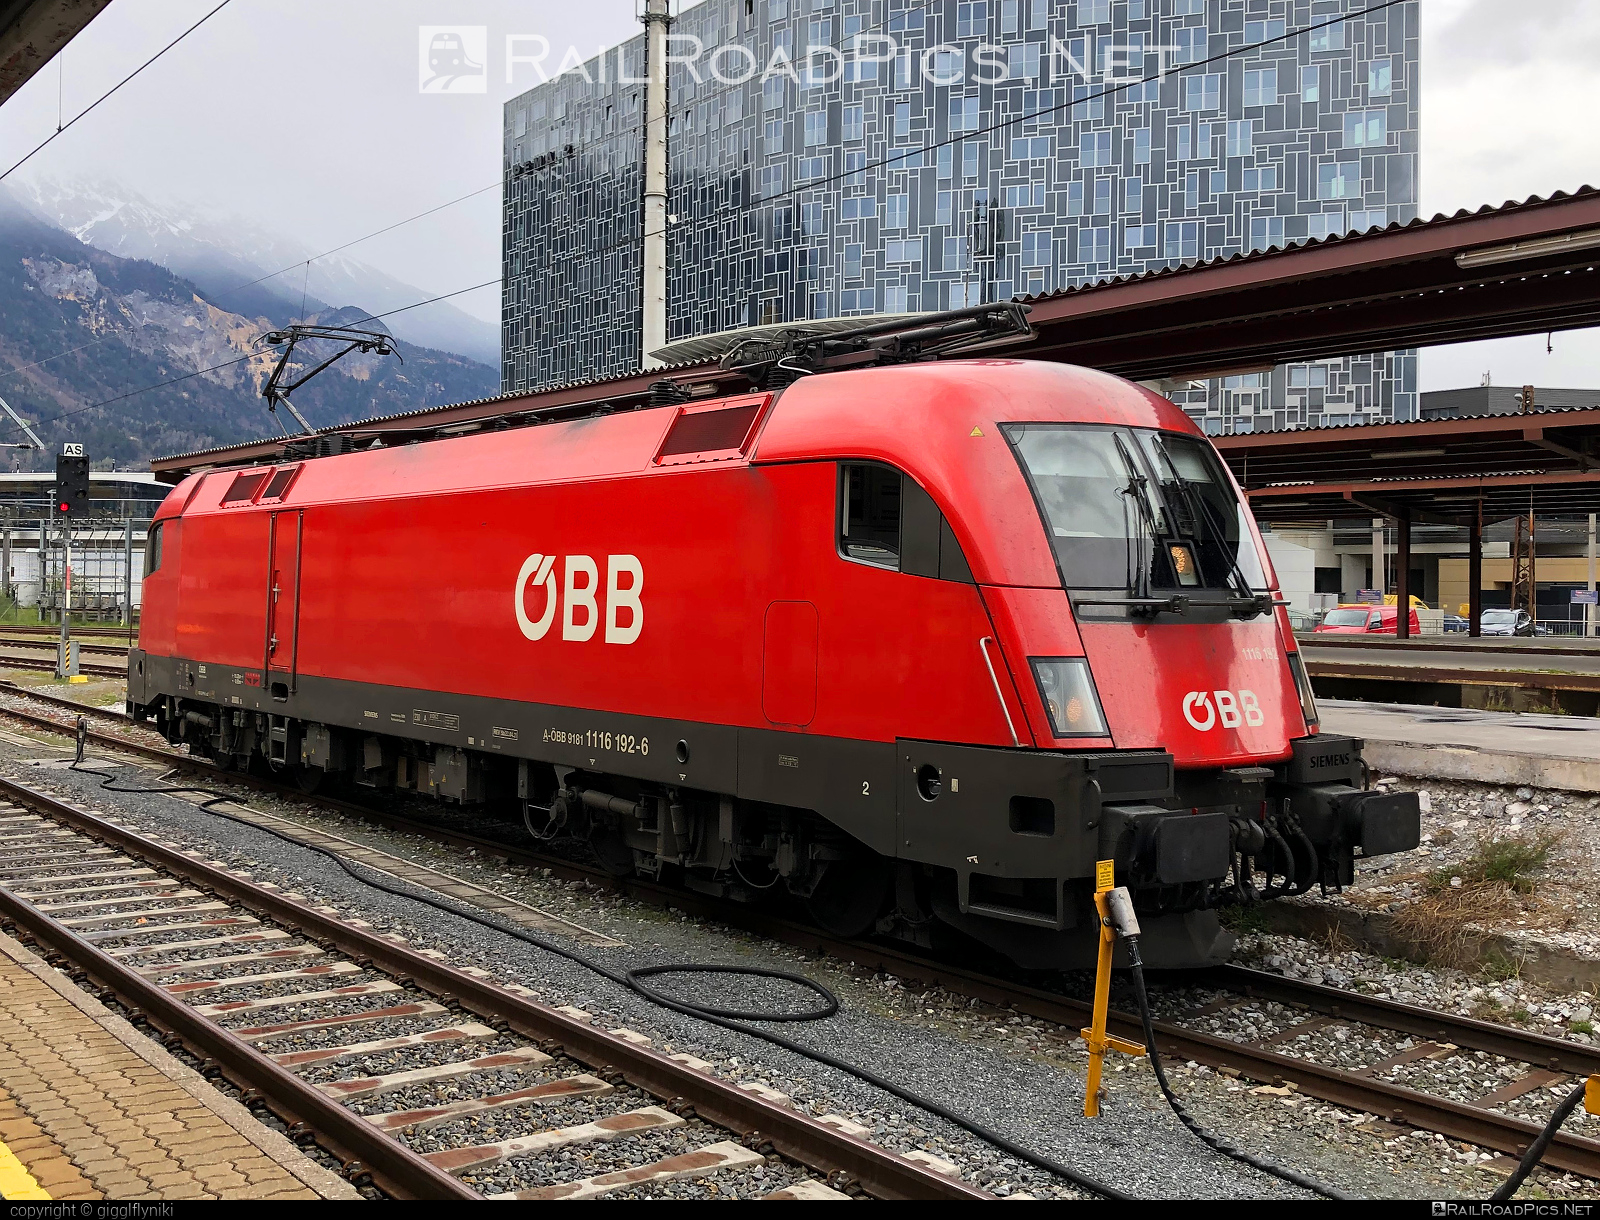 Siemens ES 64 U2 - 1116 192 operated by Österreichische Bundesbahnen #es64 #es64u2 #eurosprinter #obb #osterreichischebundesbahnen #siemens #siemensEs64 #siemensEs64u2 #siemenstaurus #taurus #tauruslocomotive